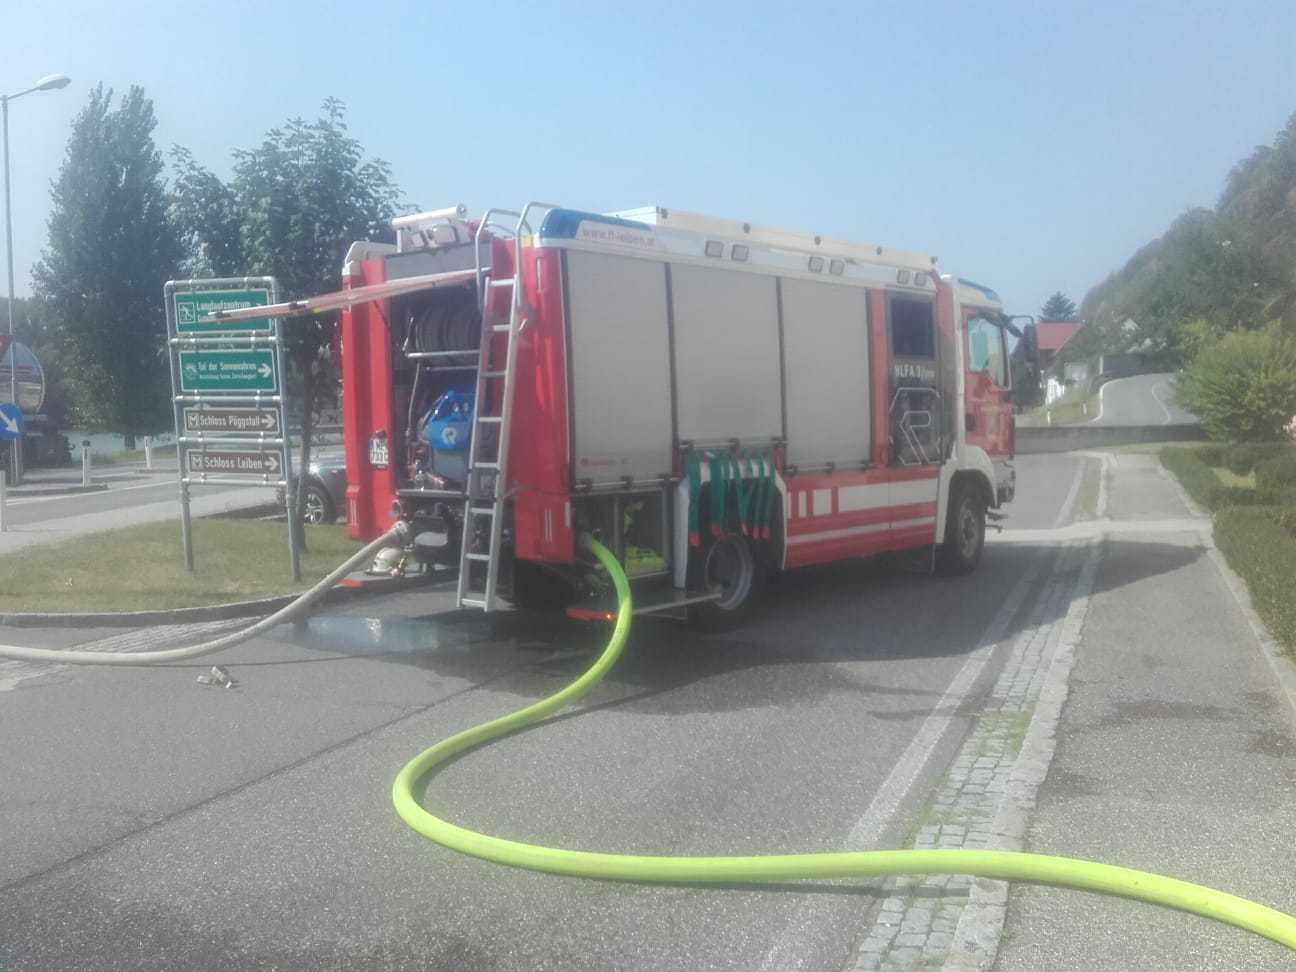 2018.08.29. Brandeinsatz in Weitenegg (5)